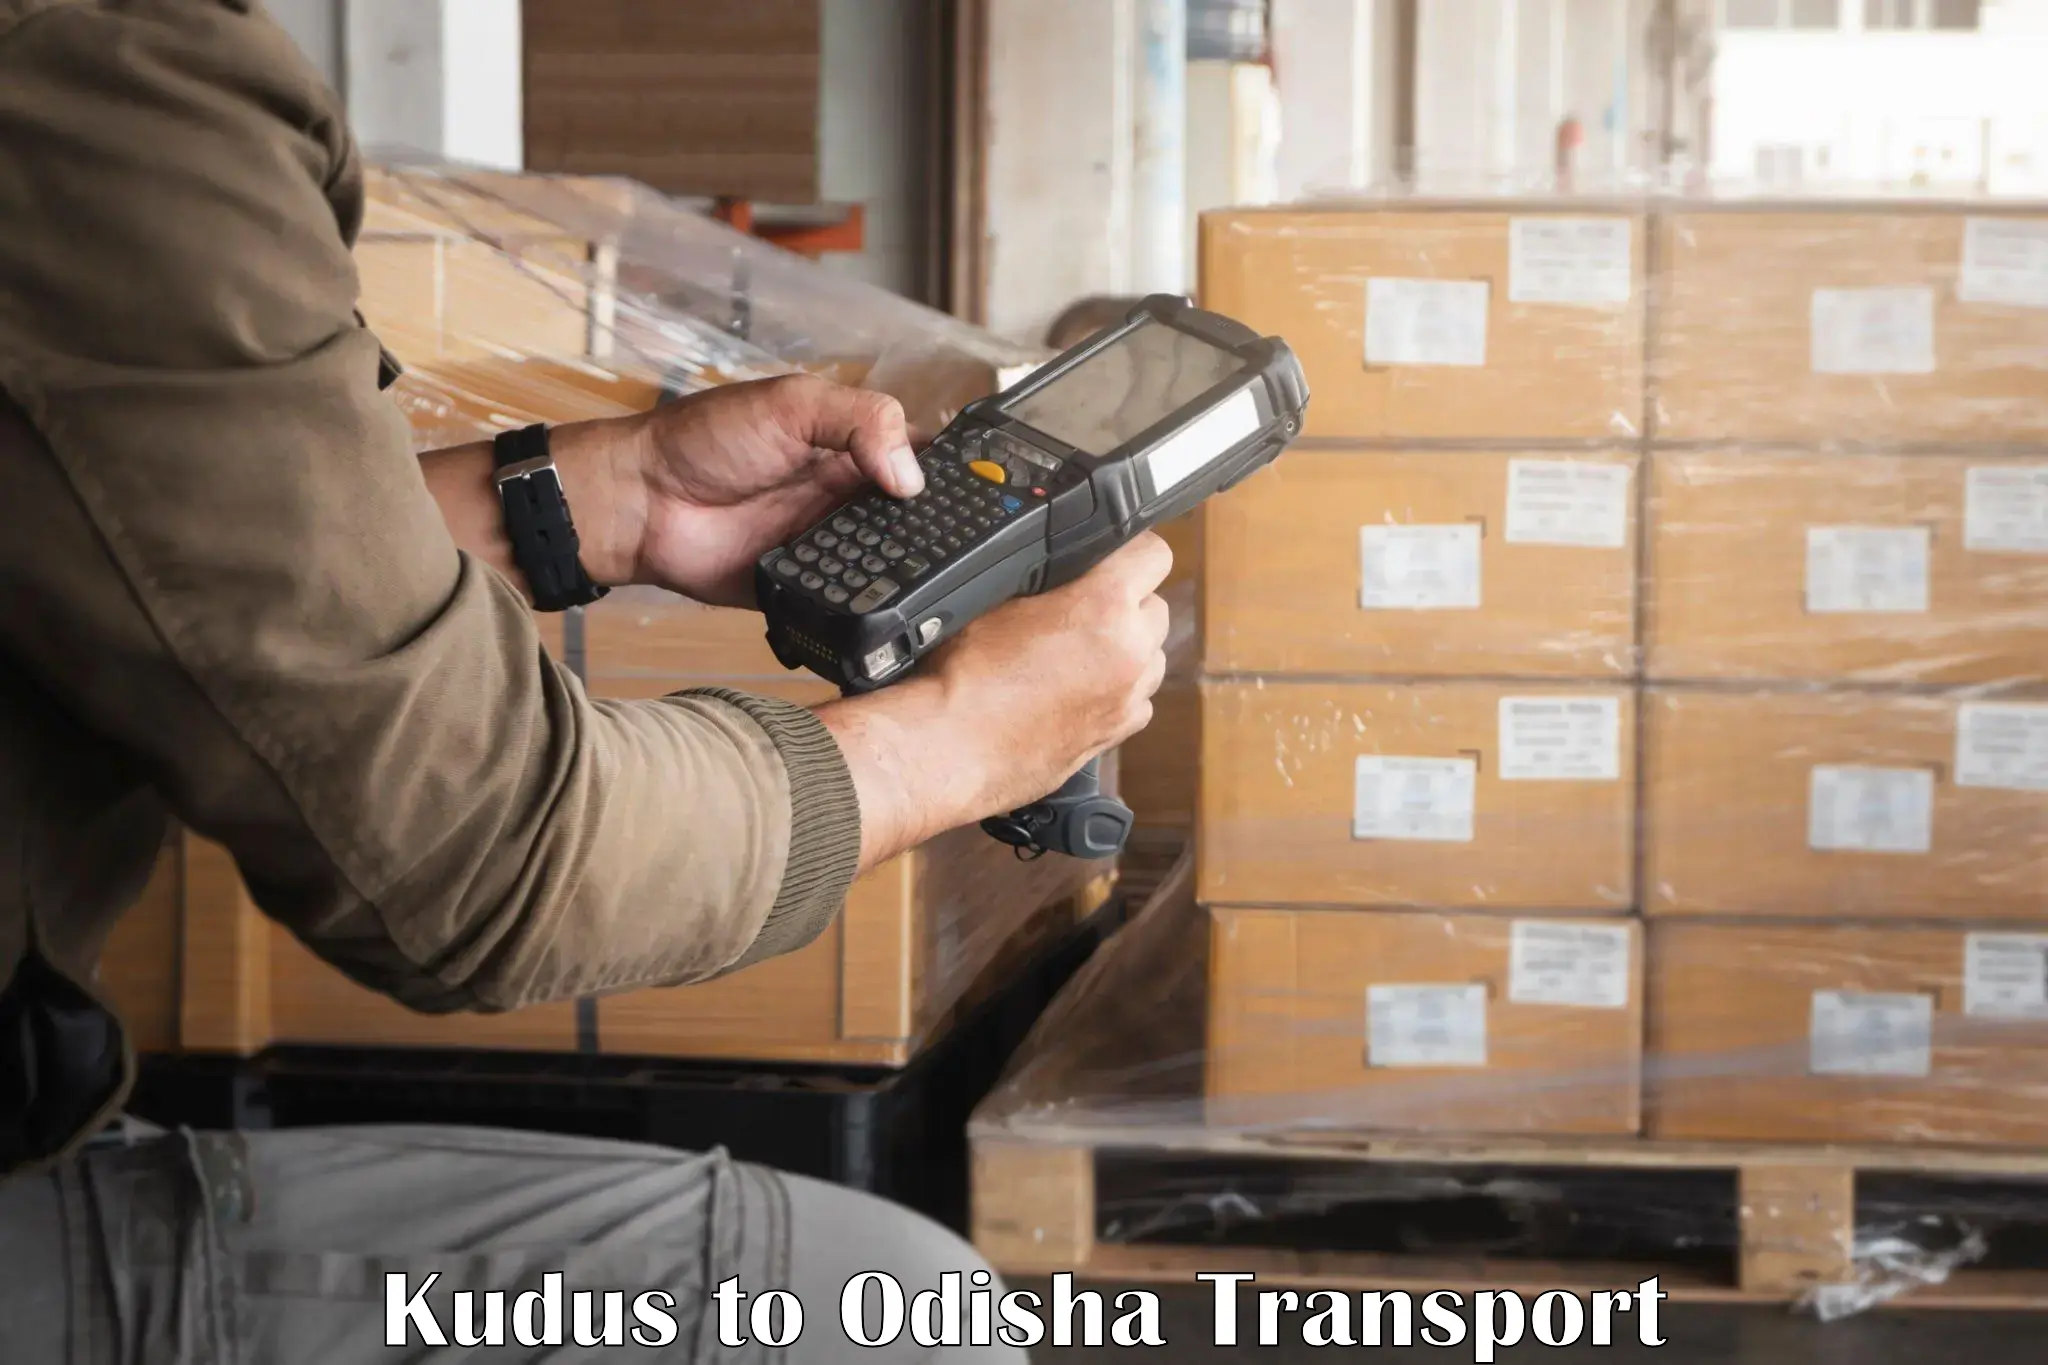 Truck transport companies in India Kudus to Sambalpur